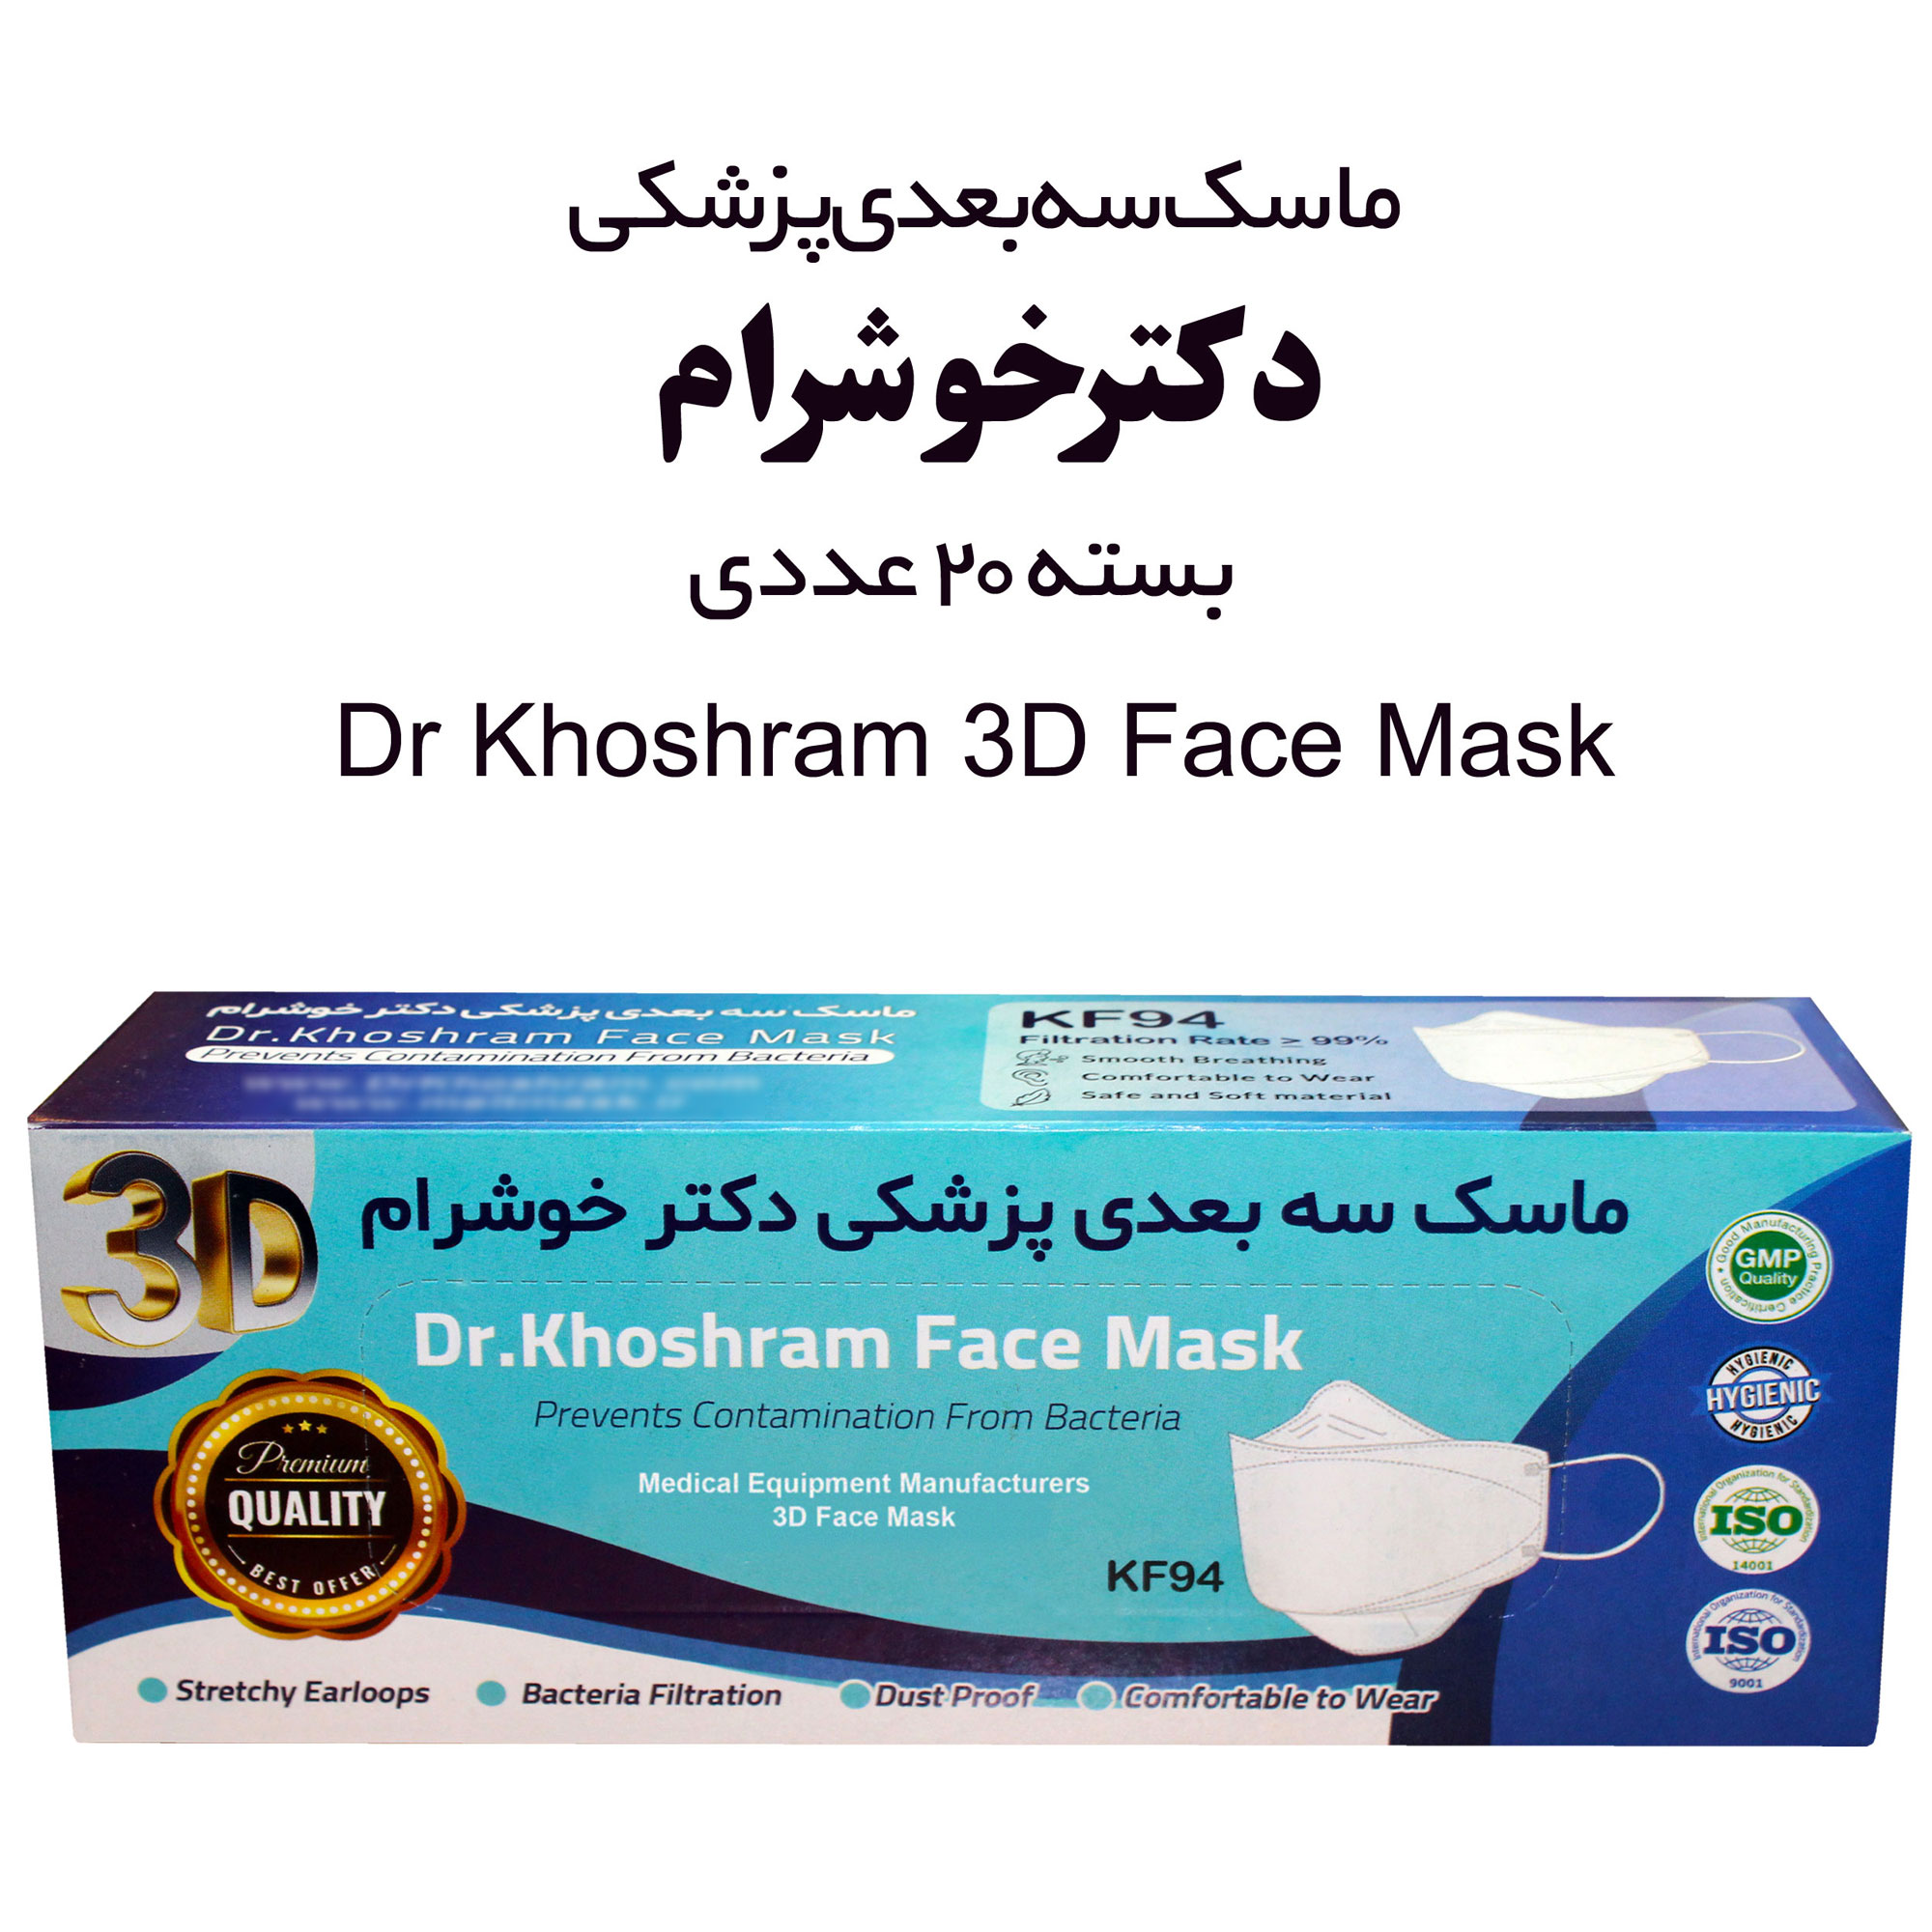 ماسک تنفسی دکتر خوشرام مدل سه بعدی 3D008 بسته 20 عددی